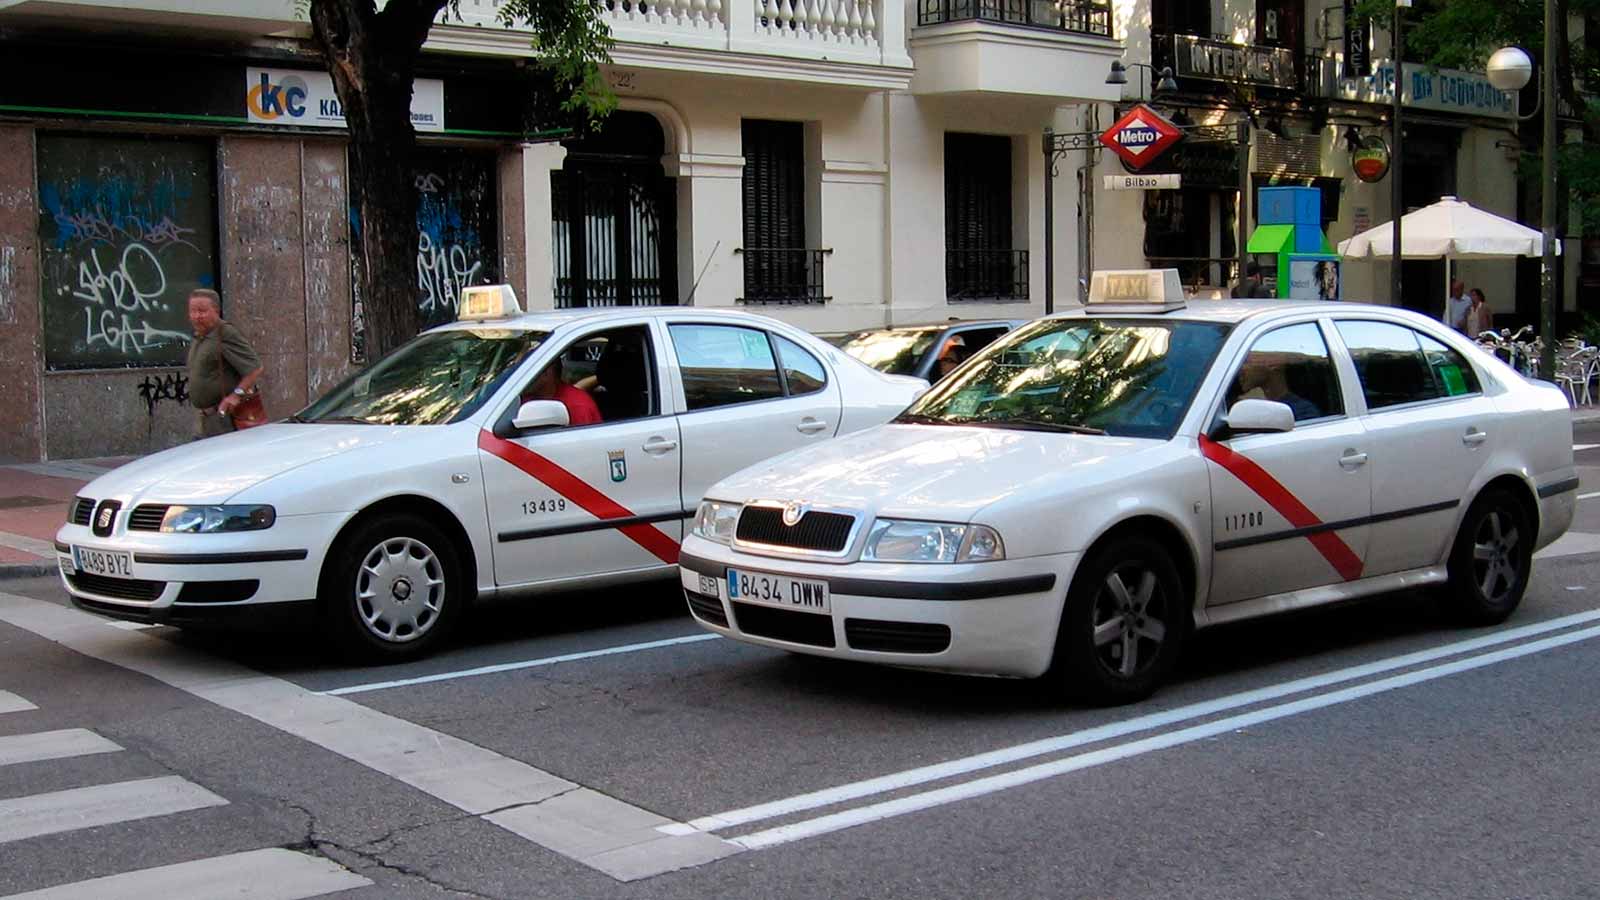 Рентинг в испании: удачная альтернатива покупке автомобиля?. испания по-русски - все о жизни в испании